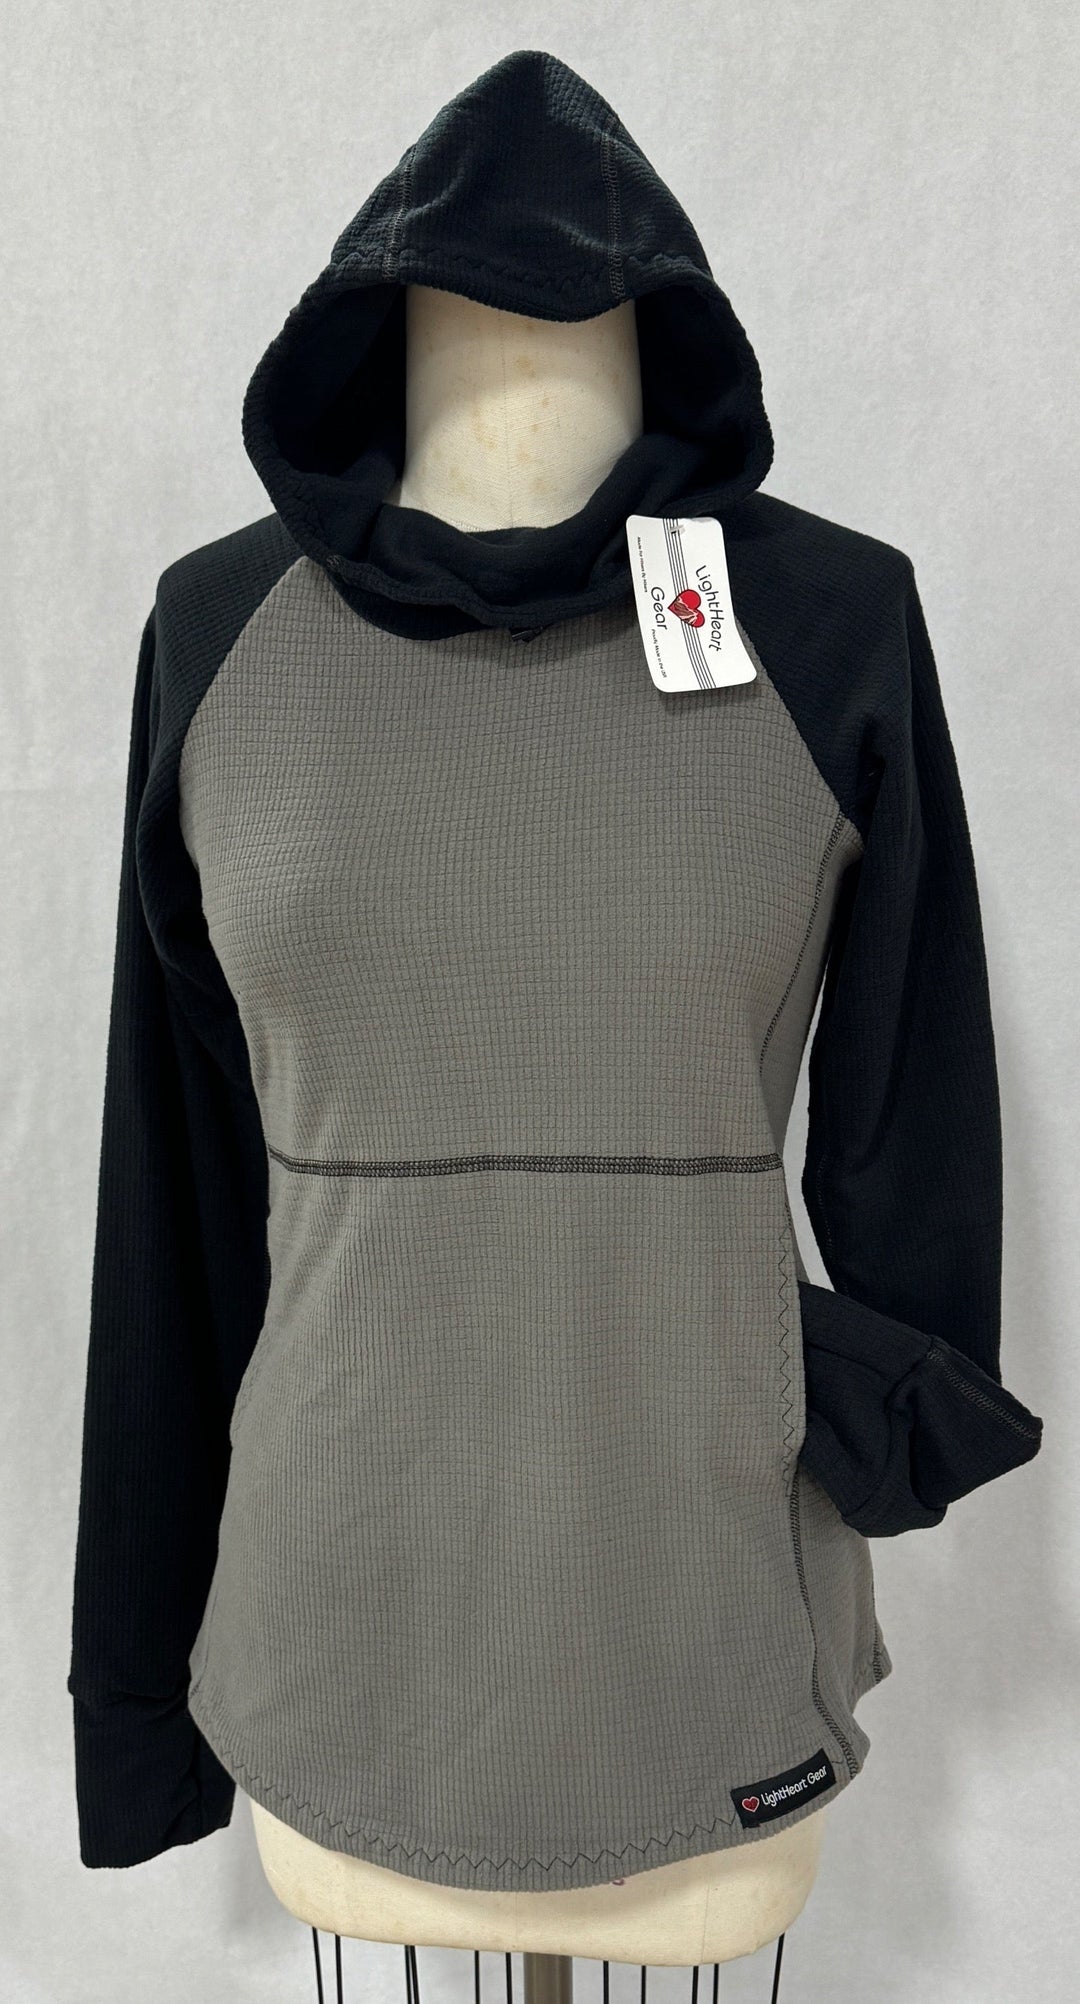 Men's Hoodie - Gray w/ Black sleeves & hood